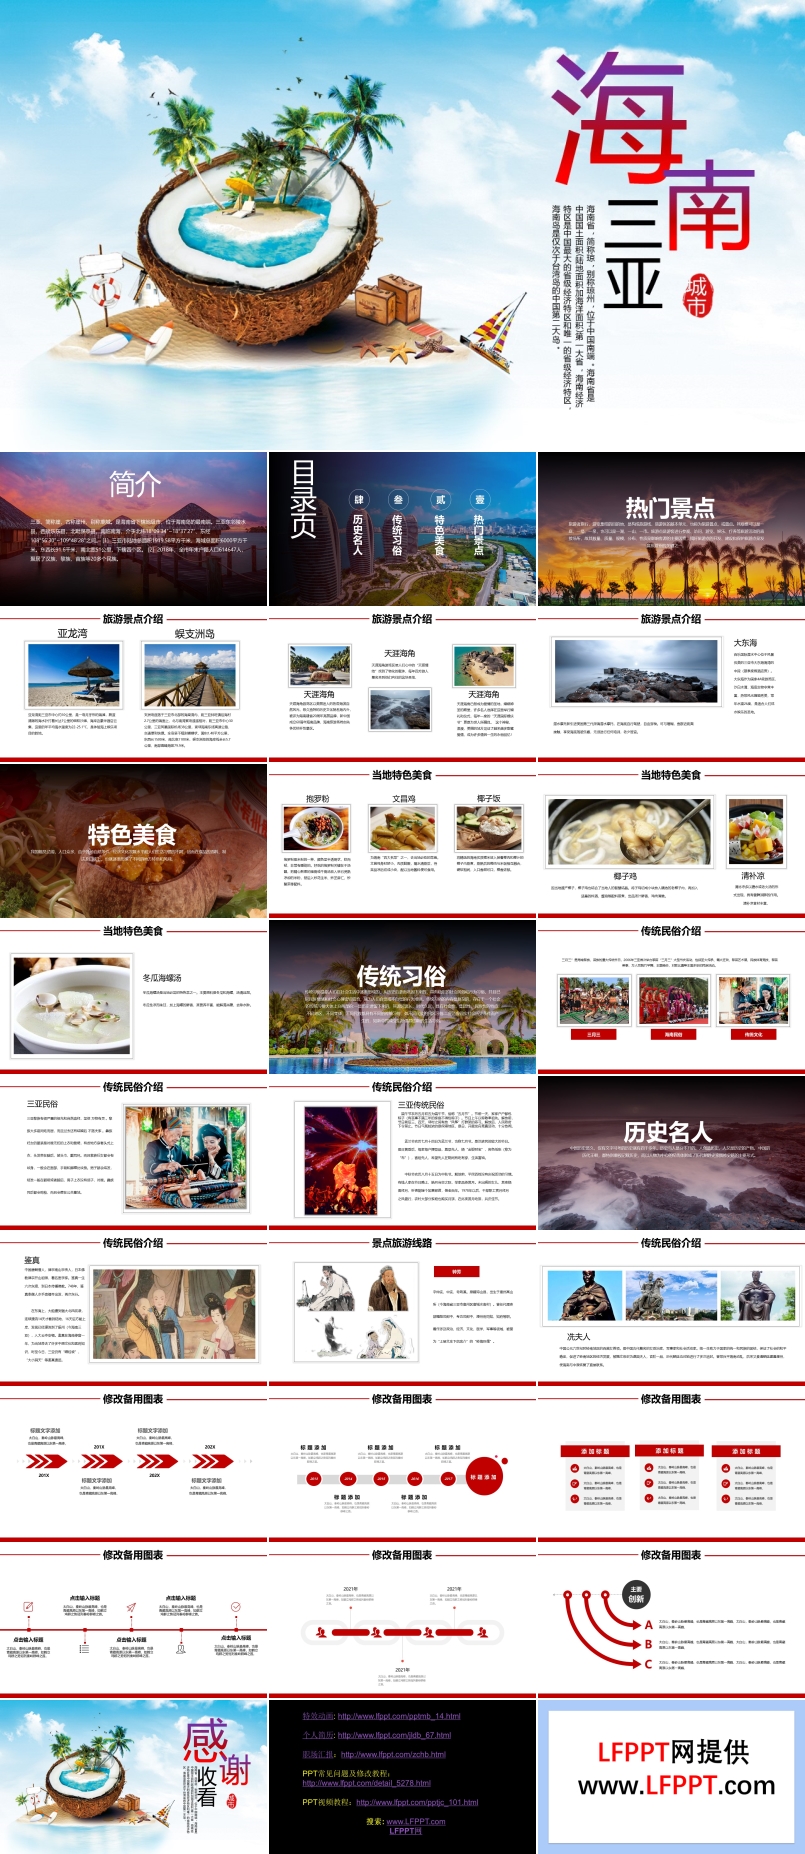 海南三亚旅游旅行介绍PPT模板免费下载